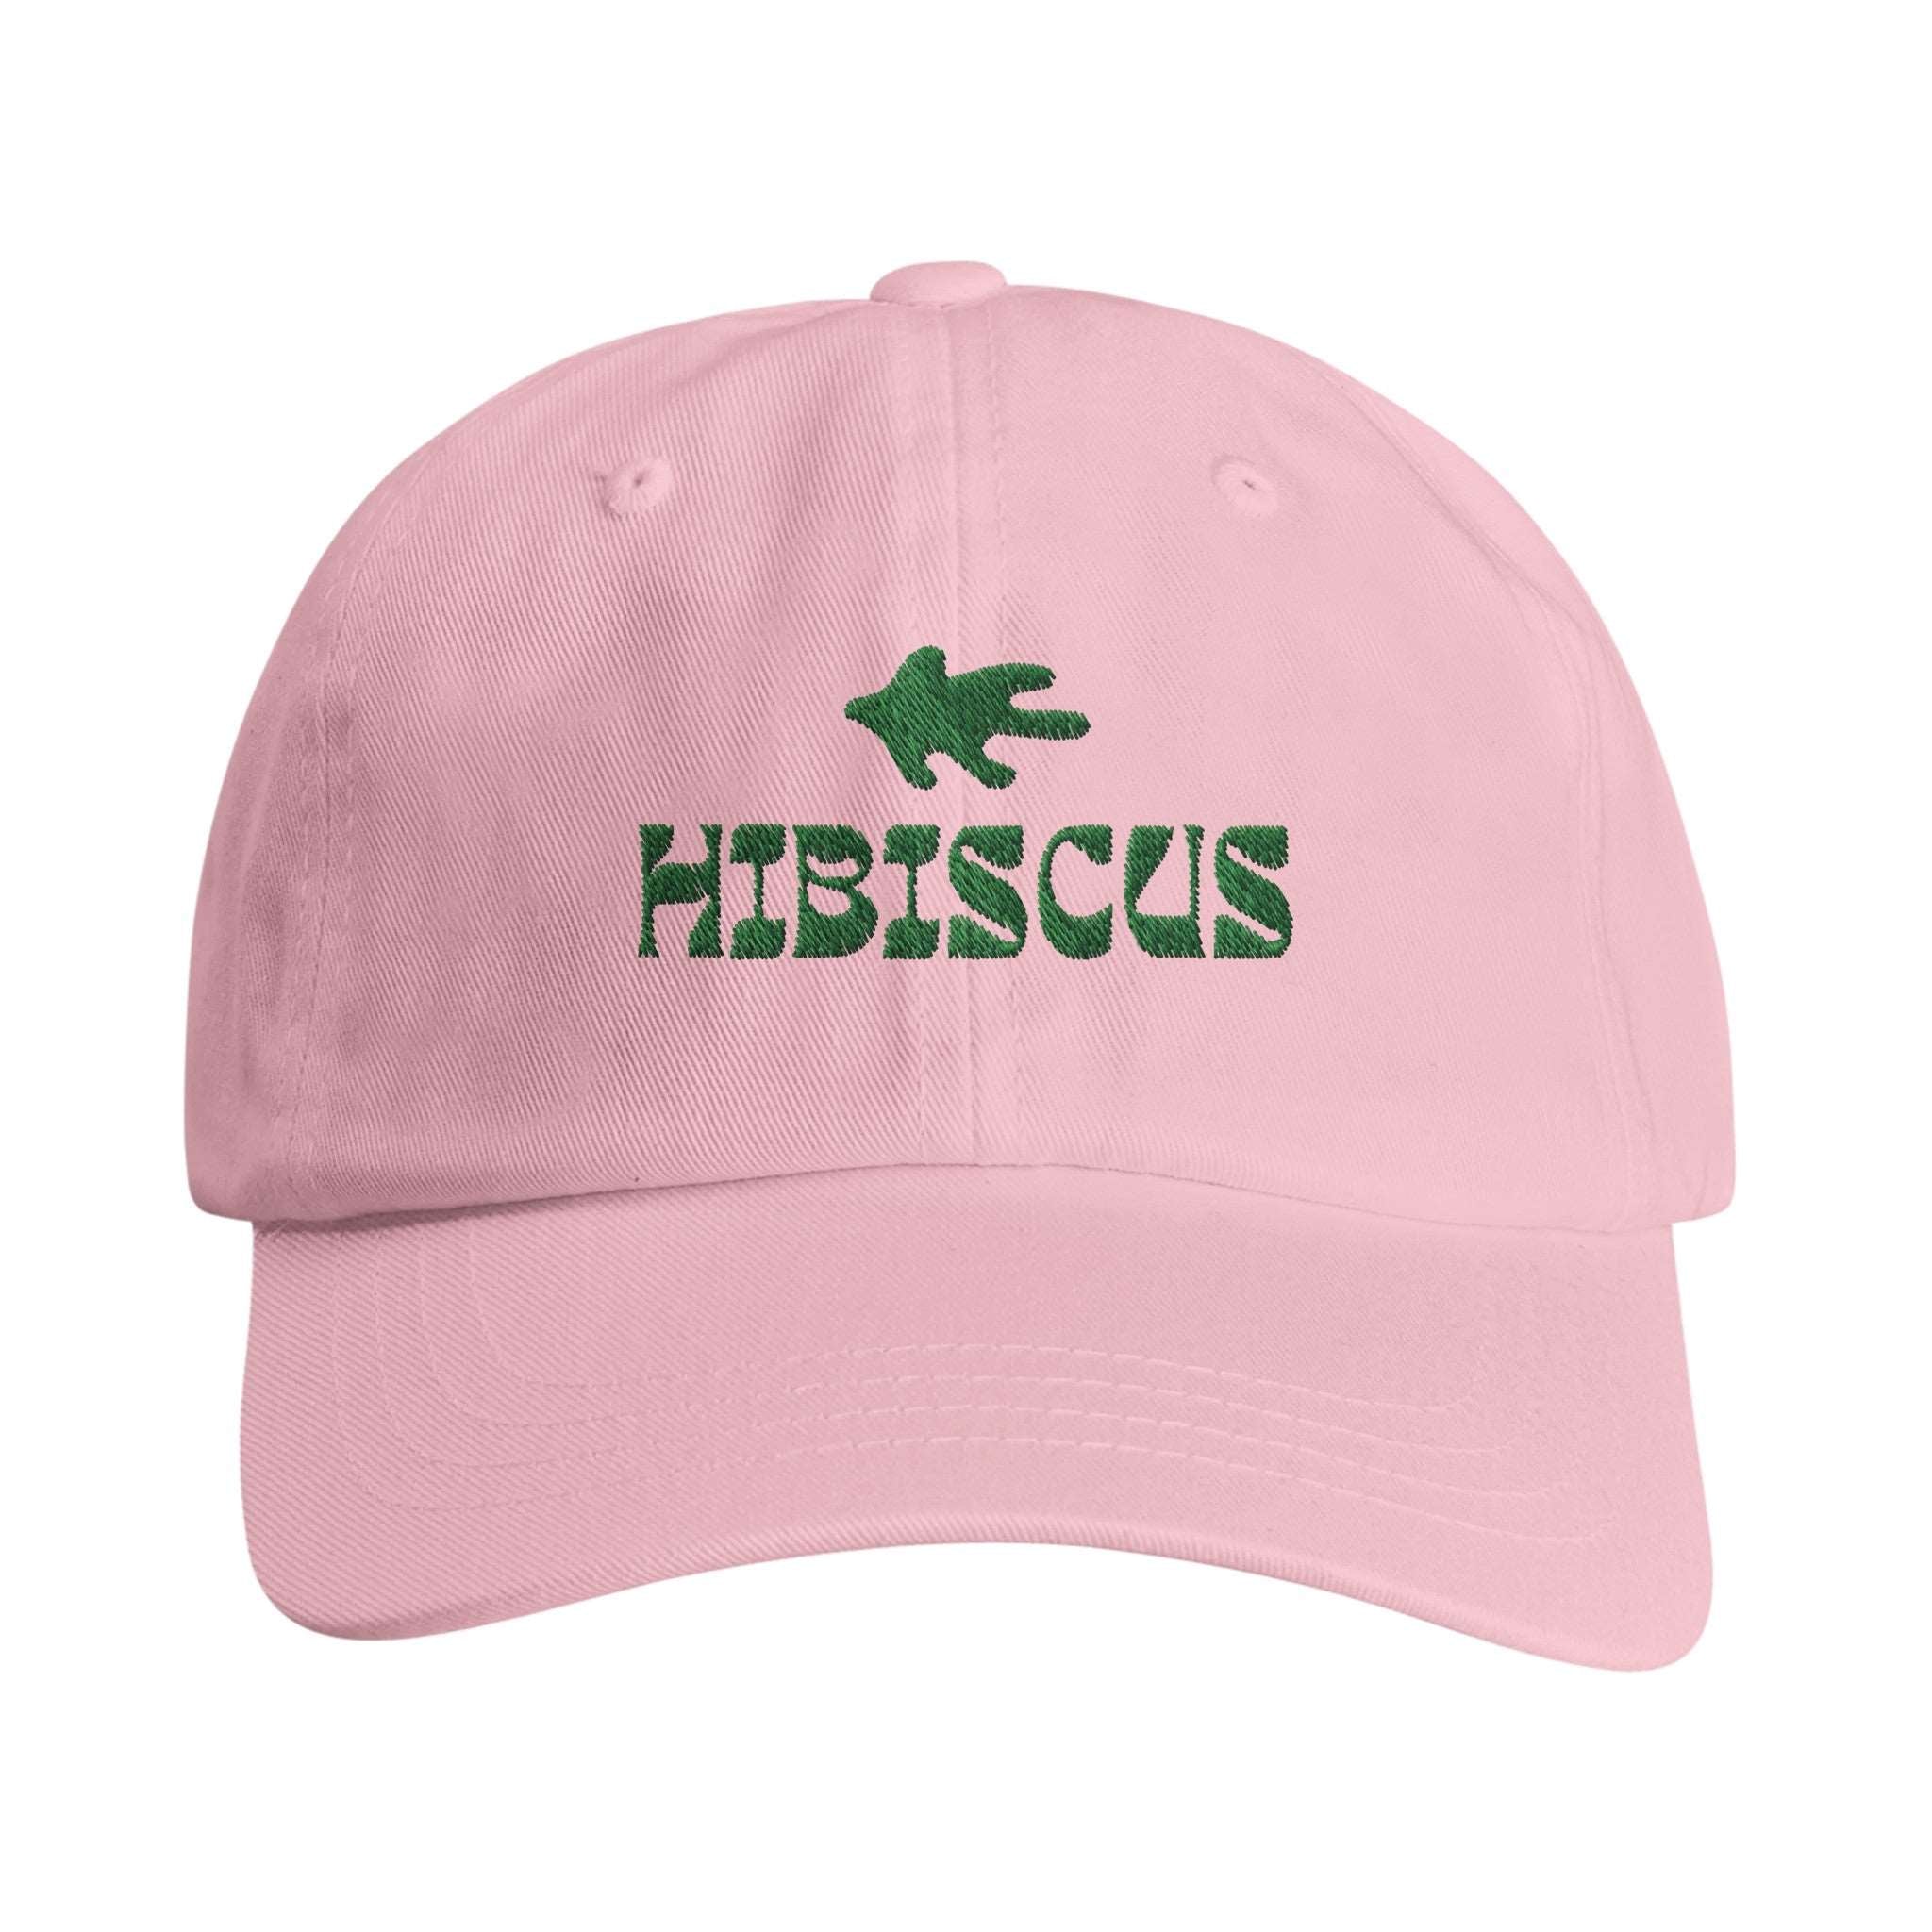 HIBISCUS CAP - PINA COLADA